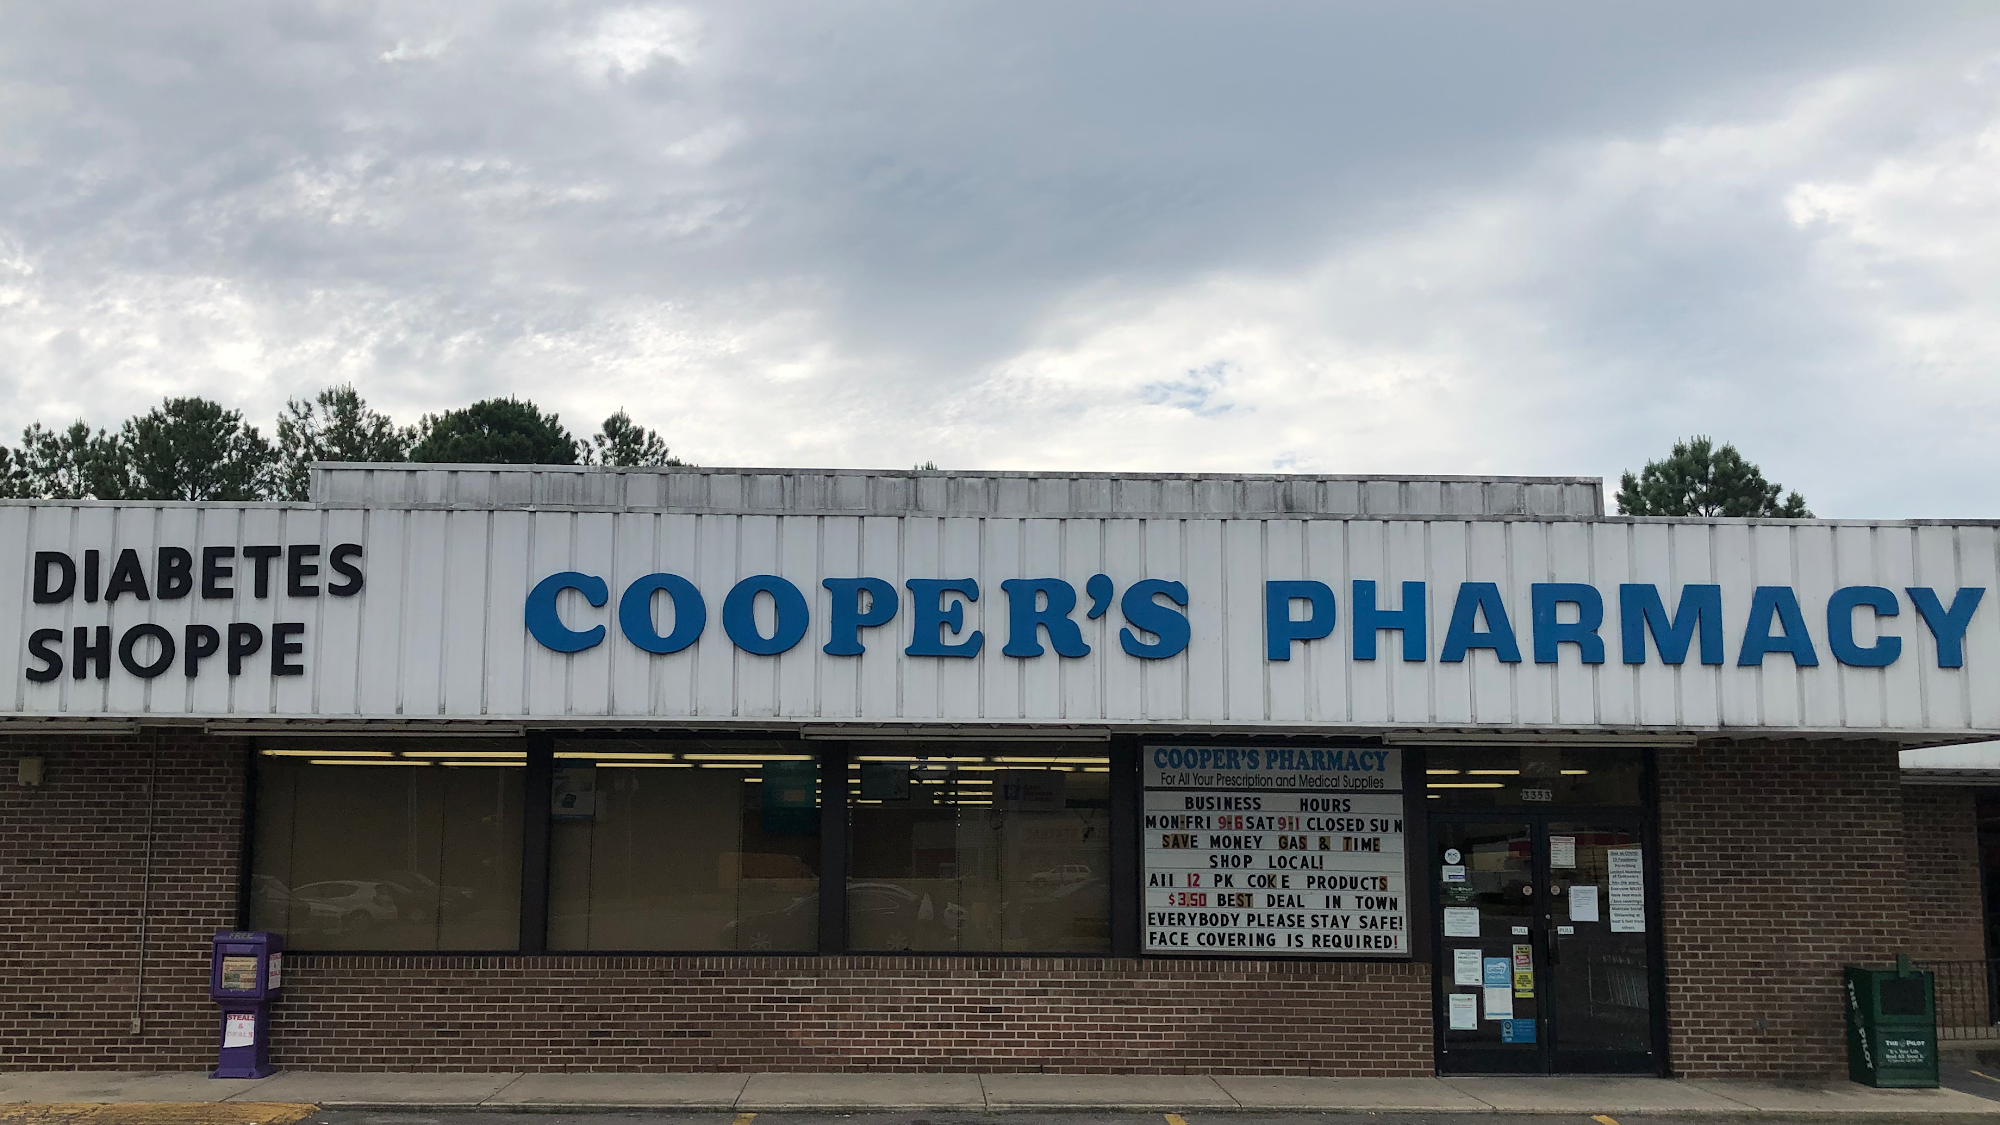 Coopers Pharmacy